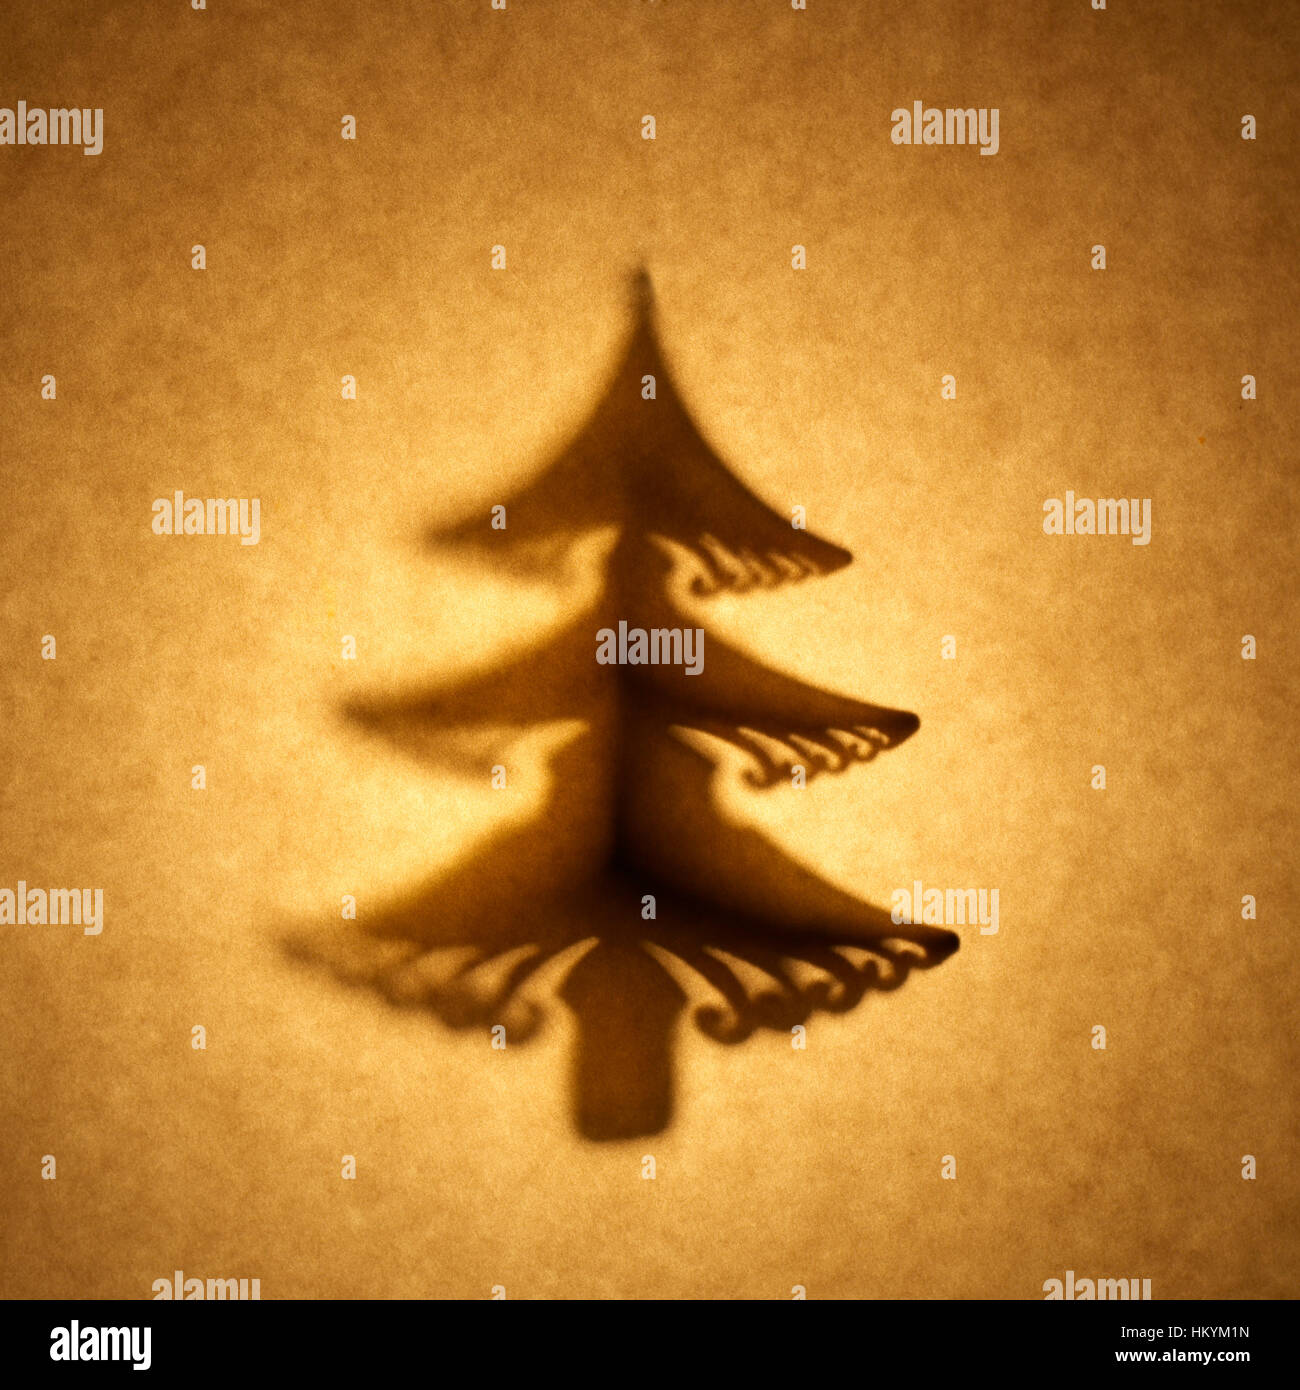 Beleuchtete Silhouette des Weihnachtsbaum-Form ausgeschnitten gegen Braunton Papier mit spot-Highlight. Stockfoto